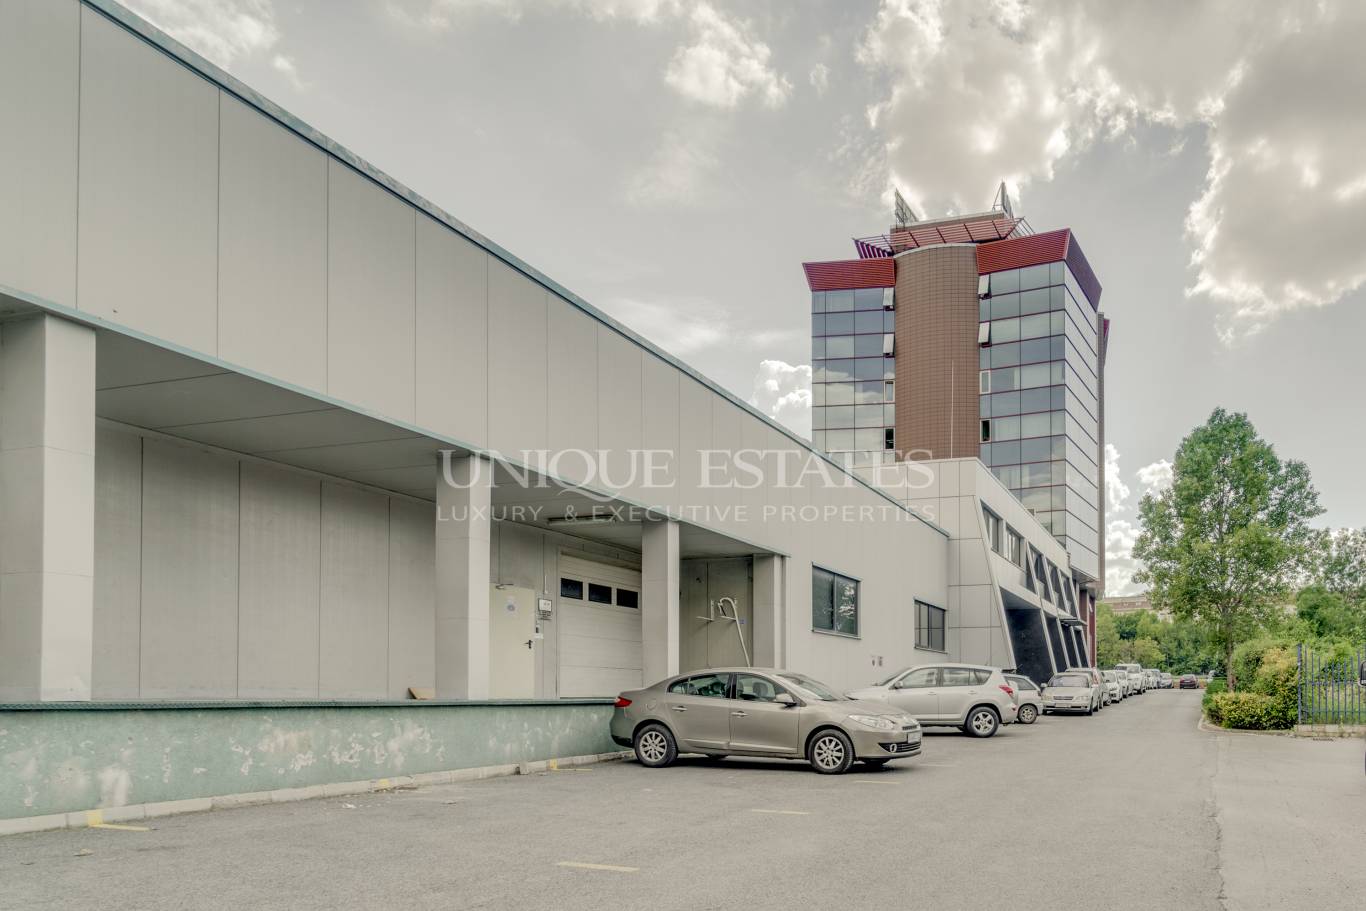 Офис сграда / Сграда под наем в София, Младост 1 - код на имота: N10114 - image 1